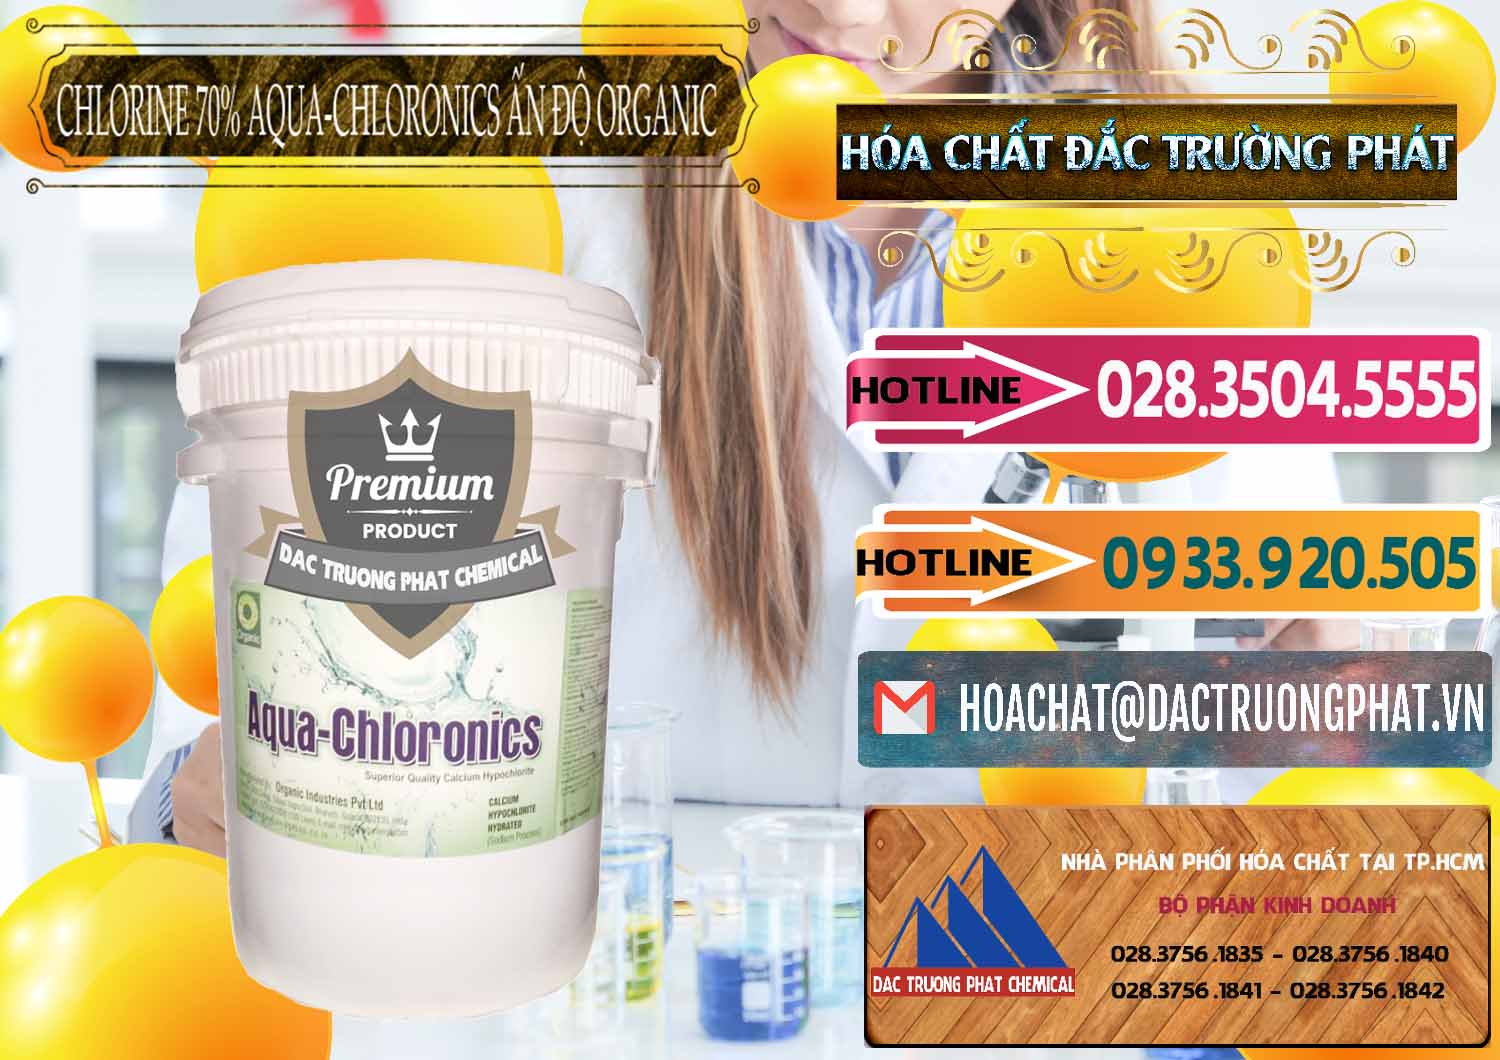 Đơn vị chuyên bán - phân phối Chlorine – Clorin 70% Aqua-Chloronics Ấn Độ Organic India - 0211 - Phân phối ( nhập khẩu ) hóa chất tại TP.HCM - dactruongphat.vn